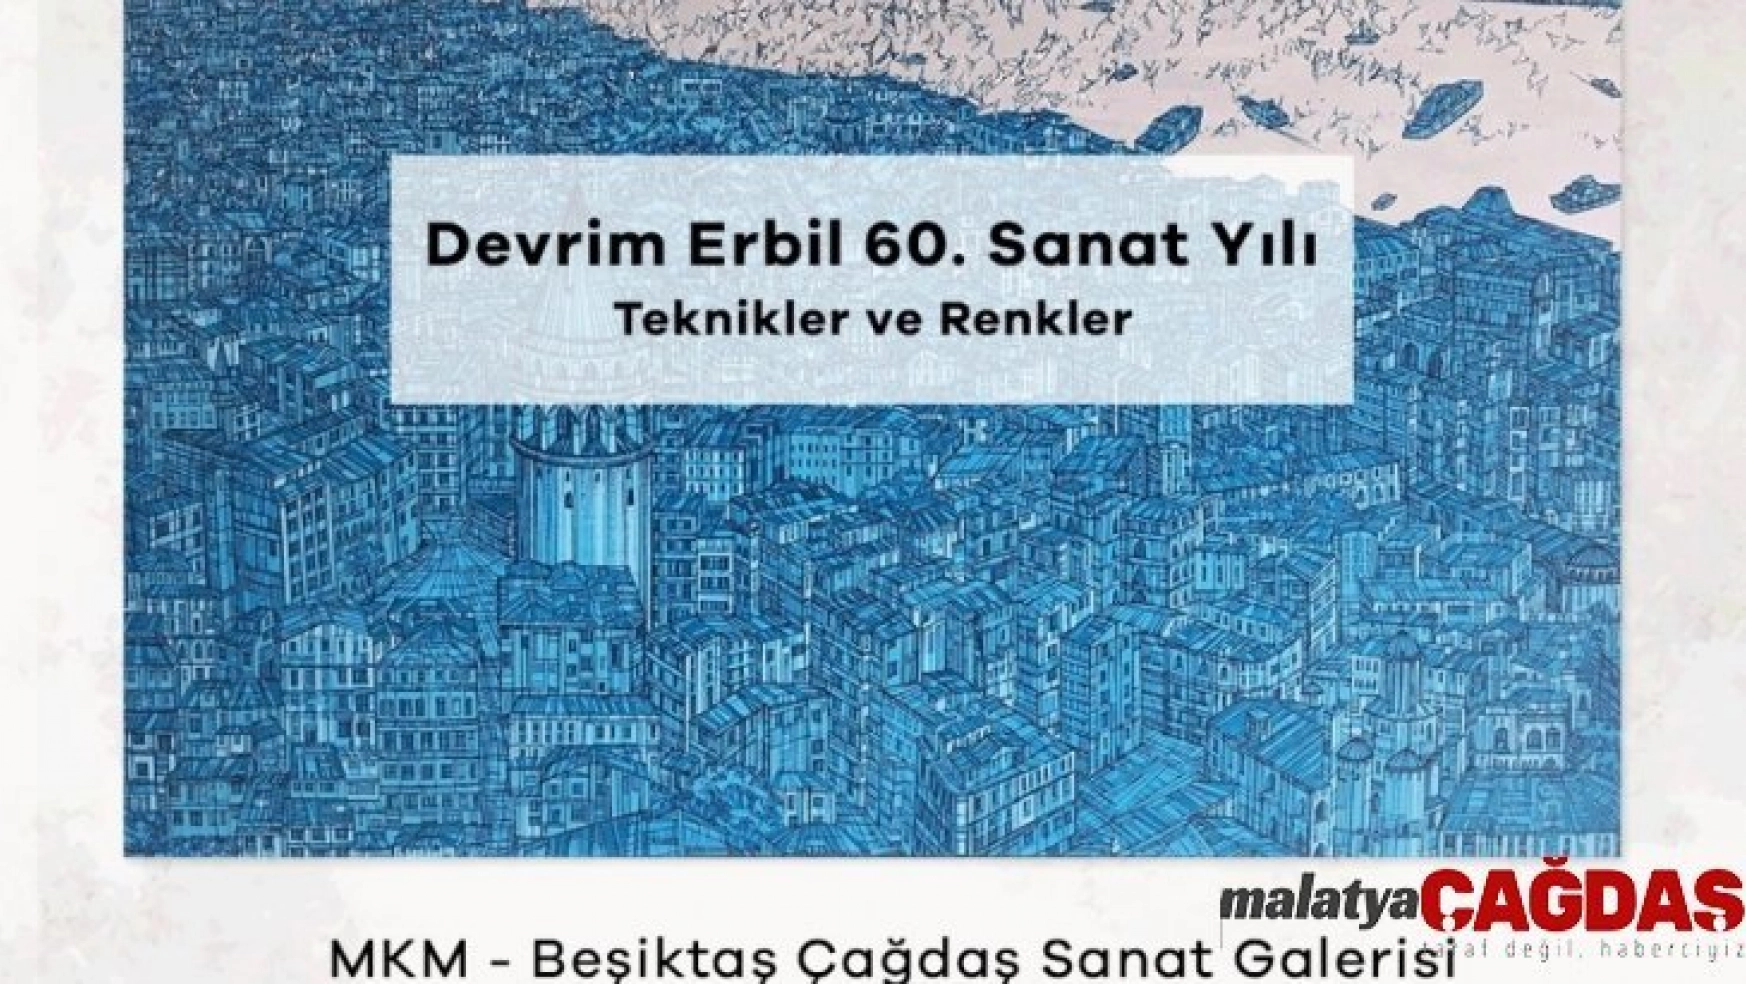 Devrim Erbil'in 60. yıl sanat sergisi Beşiktaş Çağdaş Sanat Galerisinde açılacak